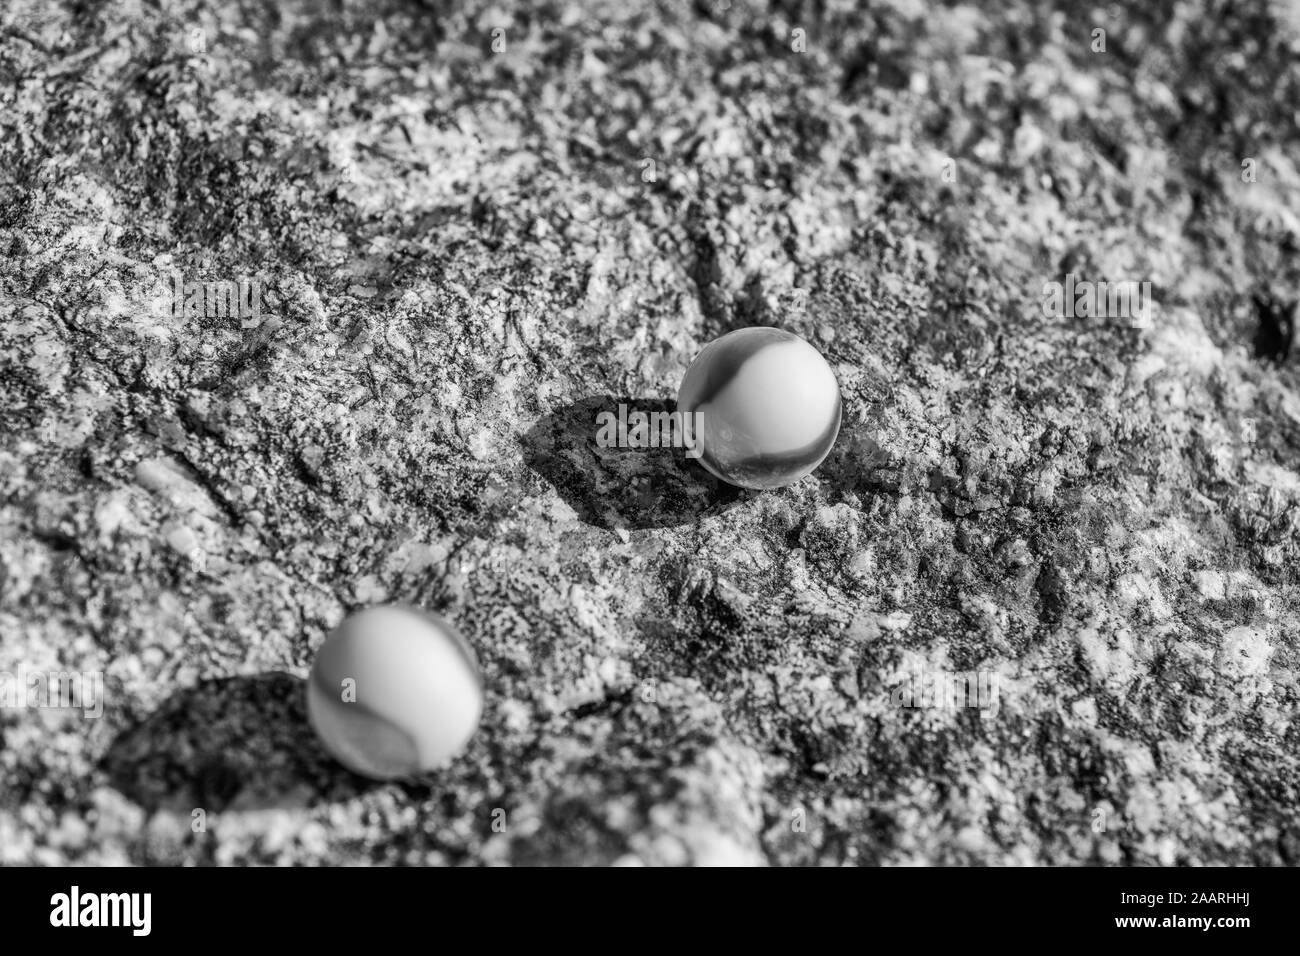 Marmi in vetro bianco e nero su superficie ruvida in pietra. Per qualcosa perso, salute mentale, perdere i vostri marmi, sfere astratte, sogni, Biden & marmi. Foto Stock